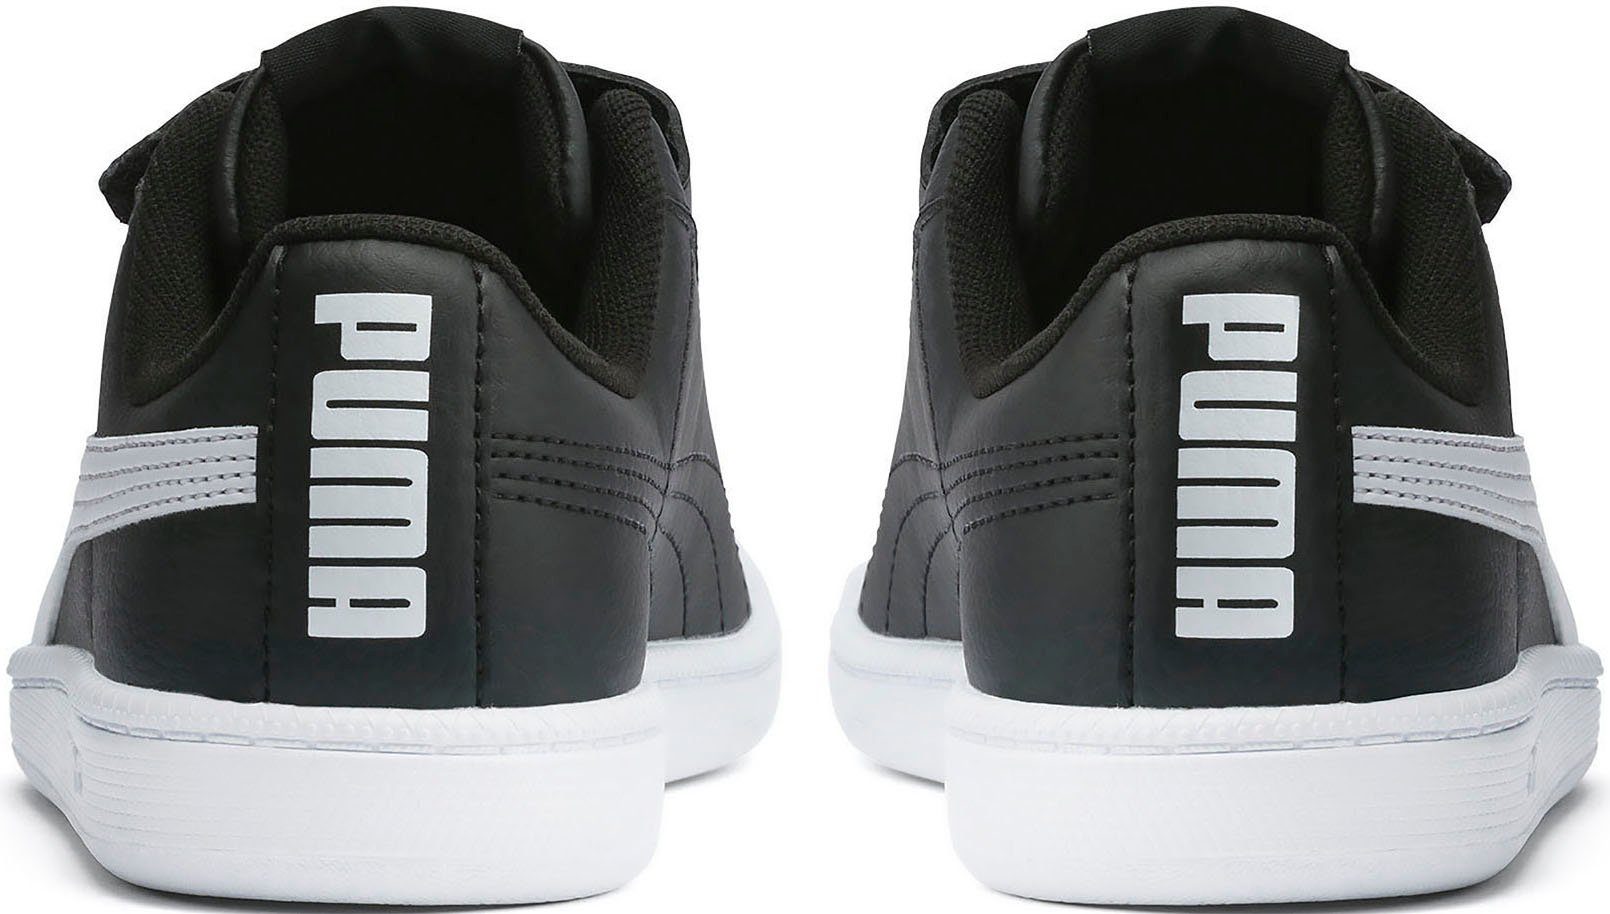 Klettverschluss Sneaker mit UP PUMA V PUMA schwarz-weiß PS